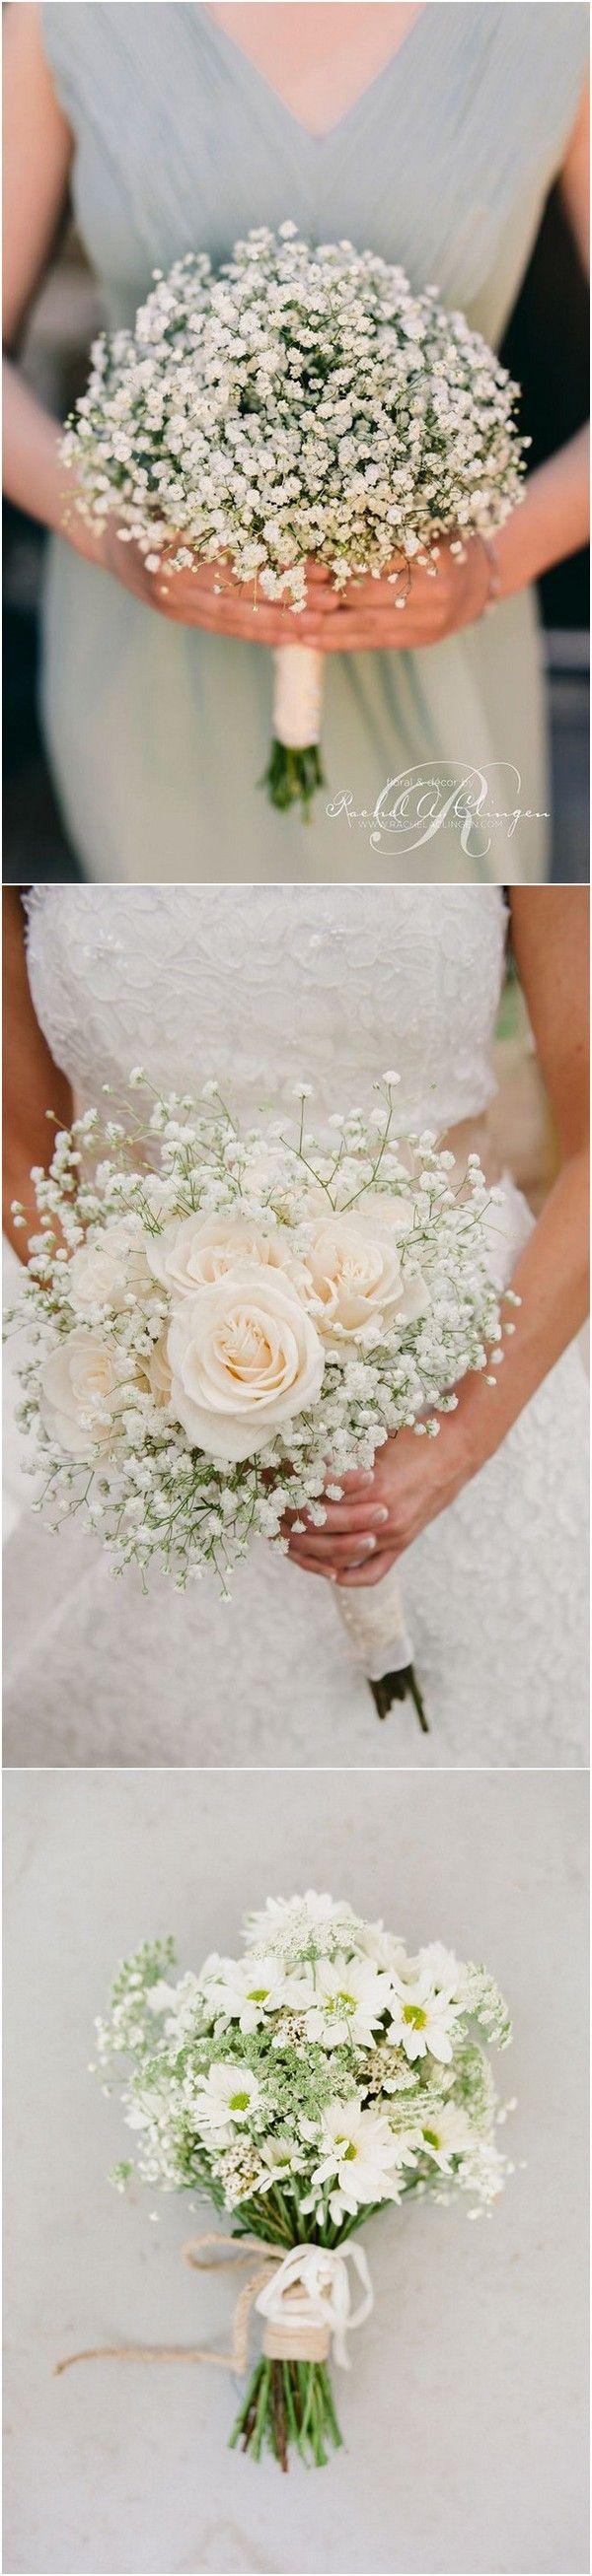 Wedding - Wedding Flowers-32 Baby's Breath Wedding Ideas